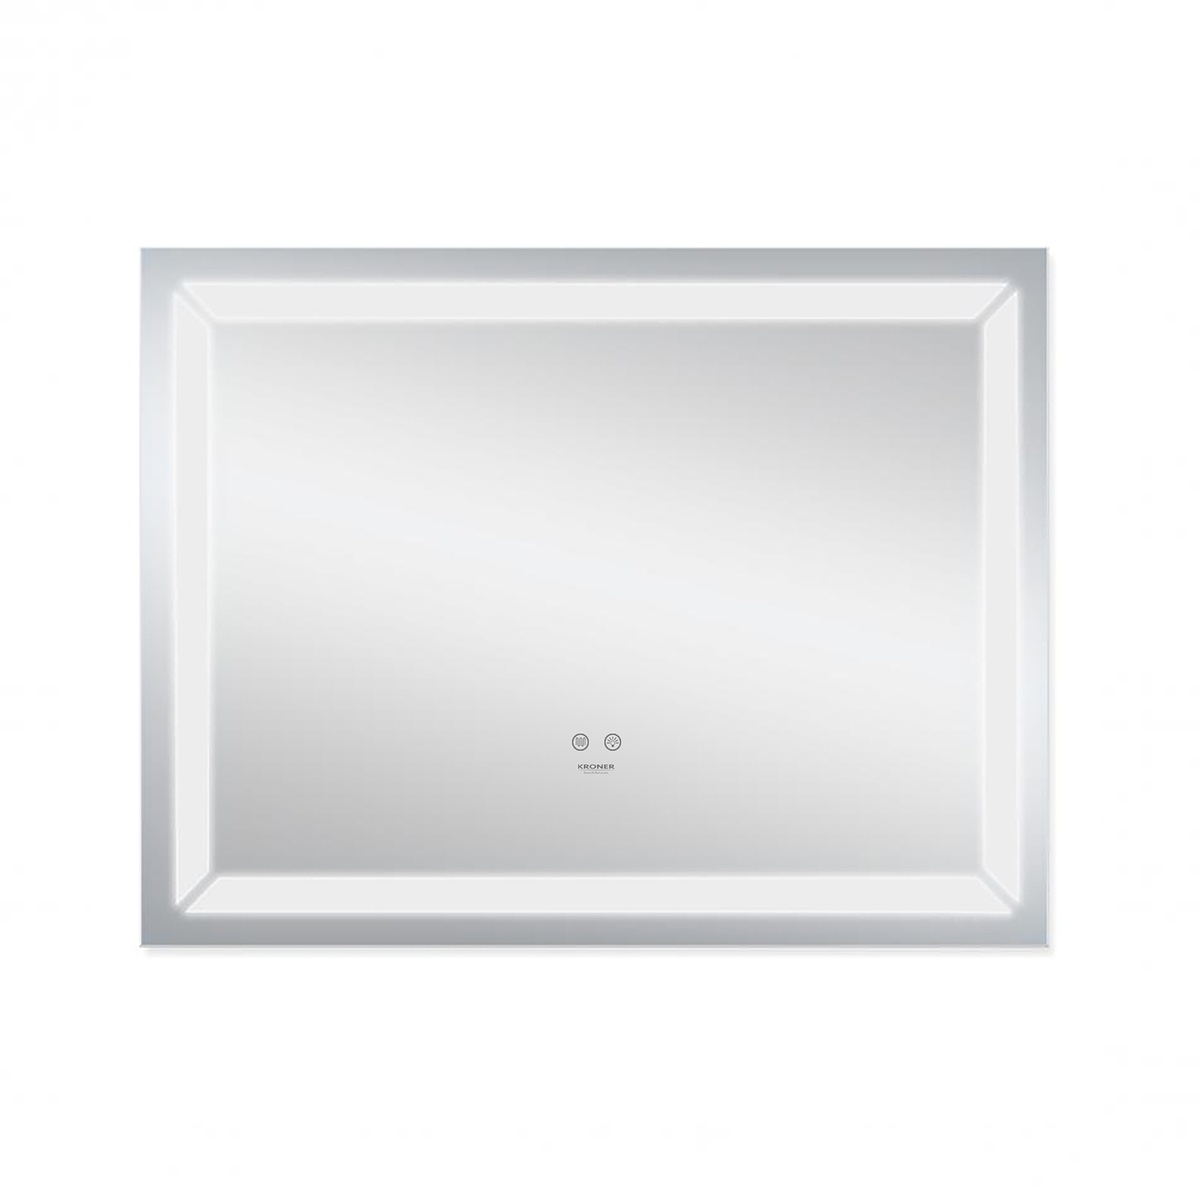 Зеркало в ванную KRONER Spiegel 70x90см c подсветкой сенсорное включение антизапотевание прямоугольное CV030031